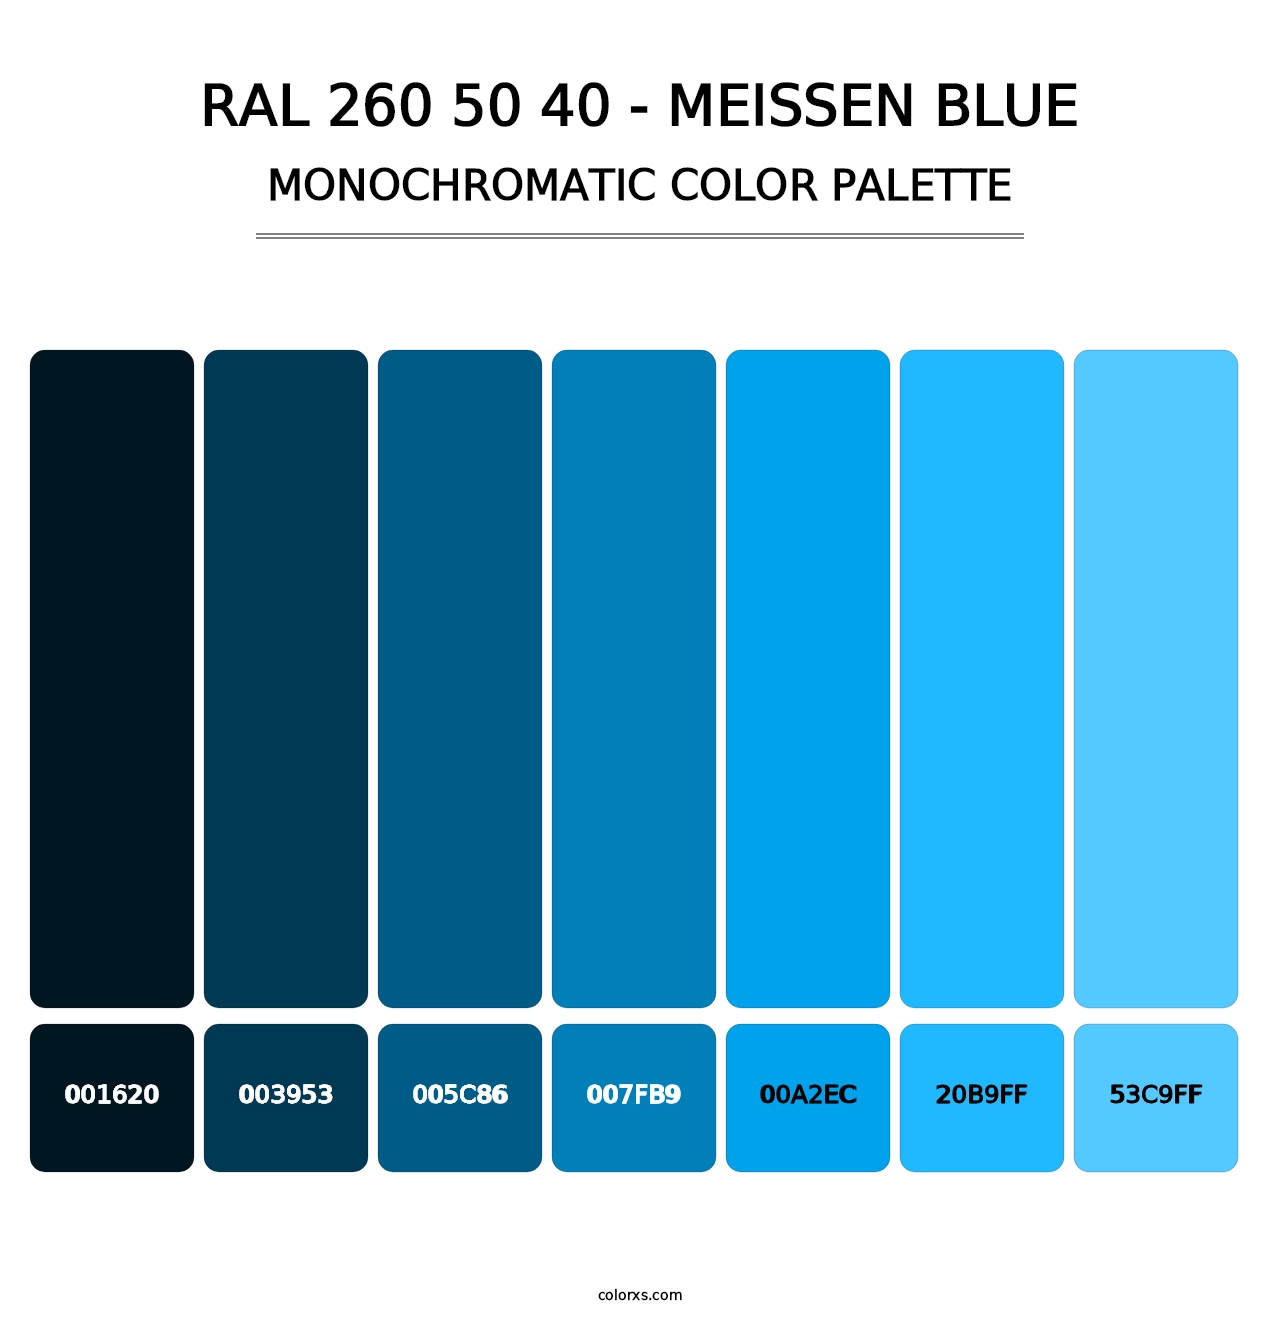 RAL 260 50 40 - Meissen Blue - Monochromatic Color Palette